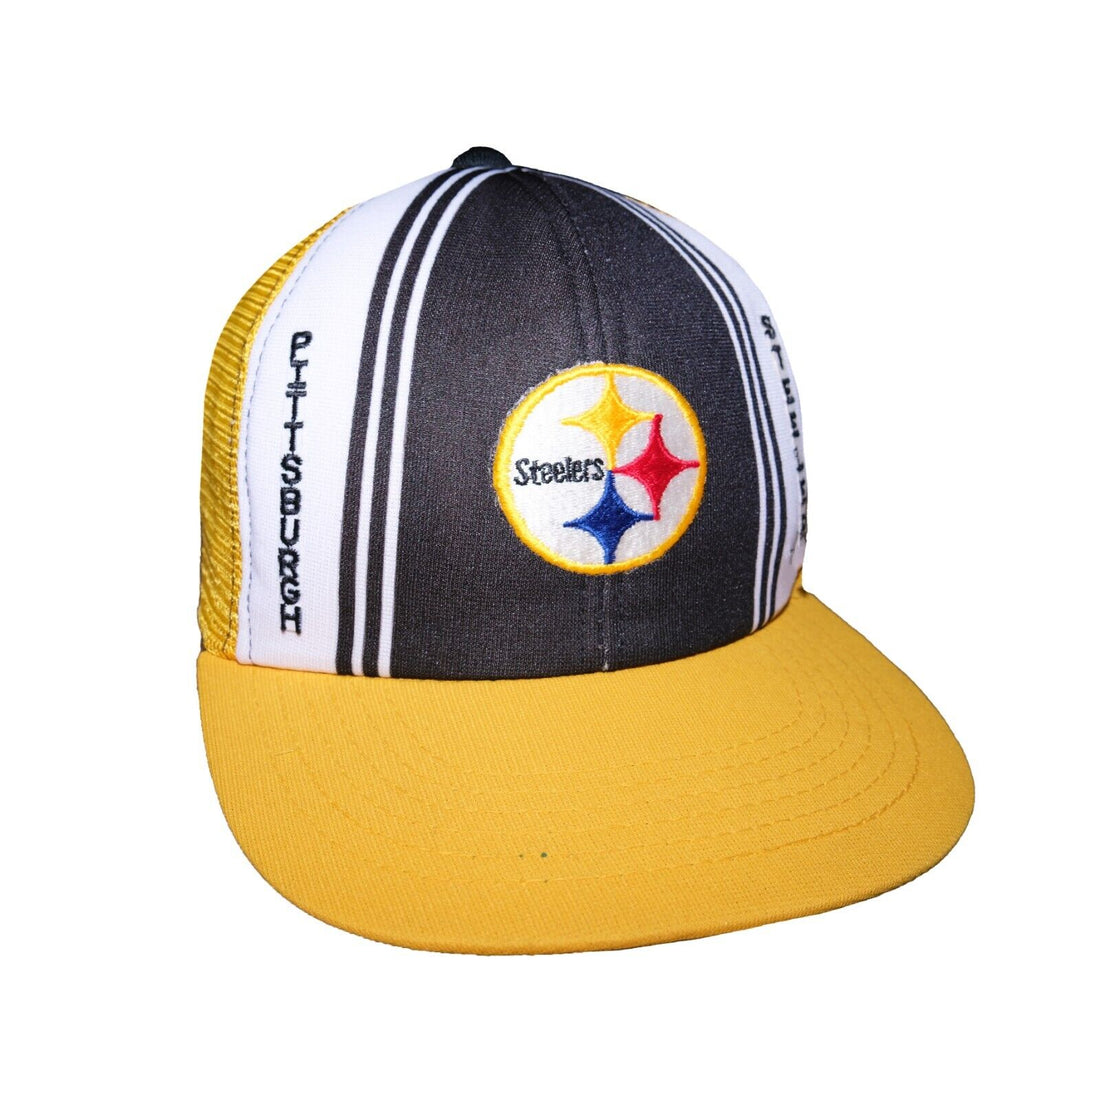 Vintage Pittsburgh Steelers Mesh Trucker Snapback Hat OSFA 90s NFL